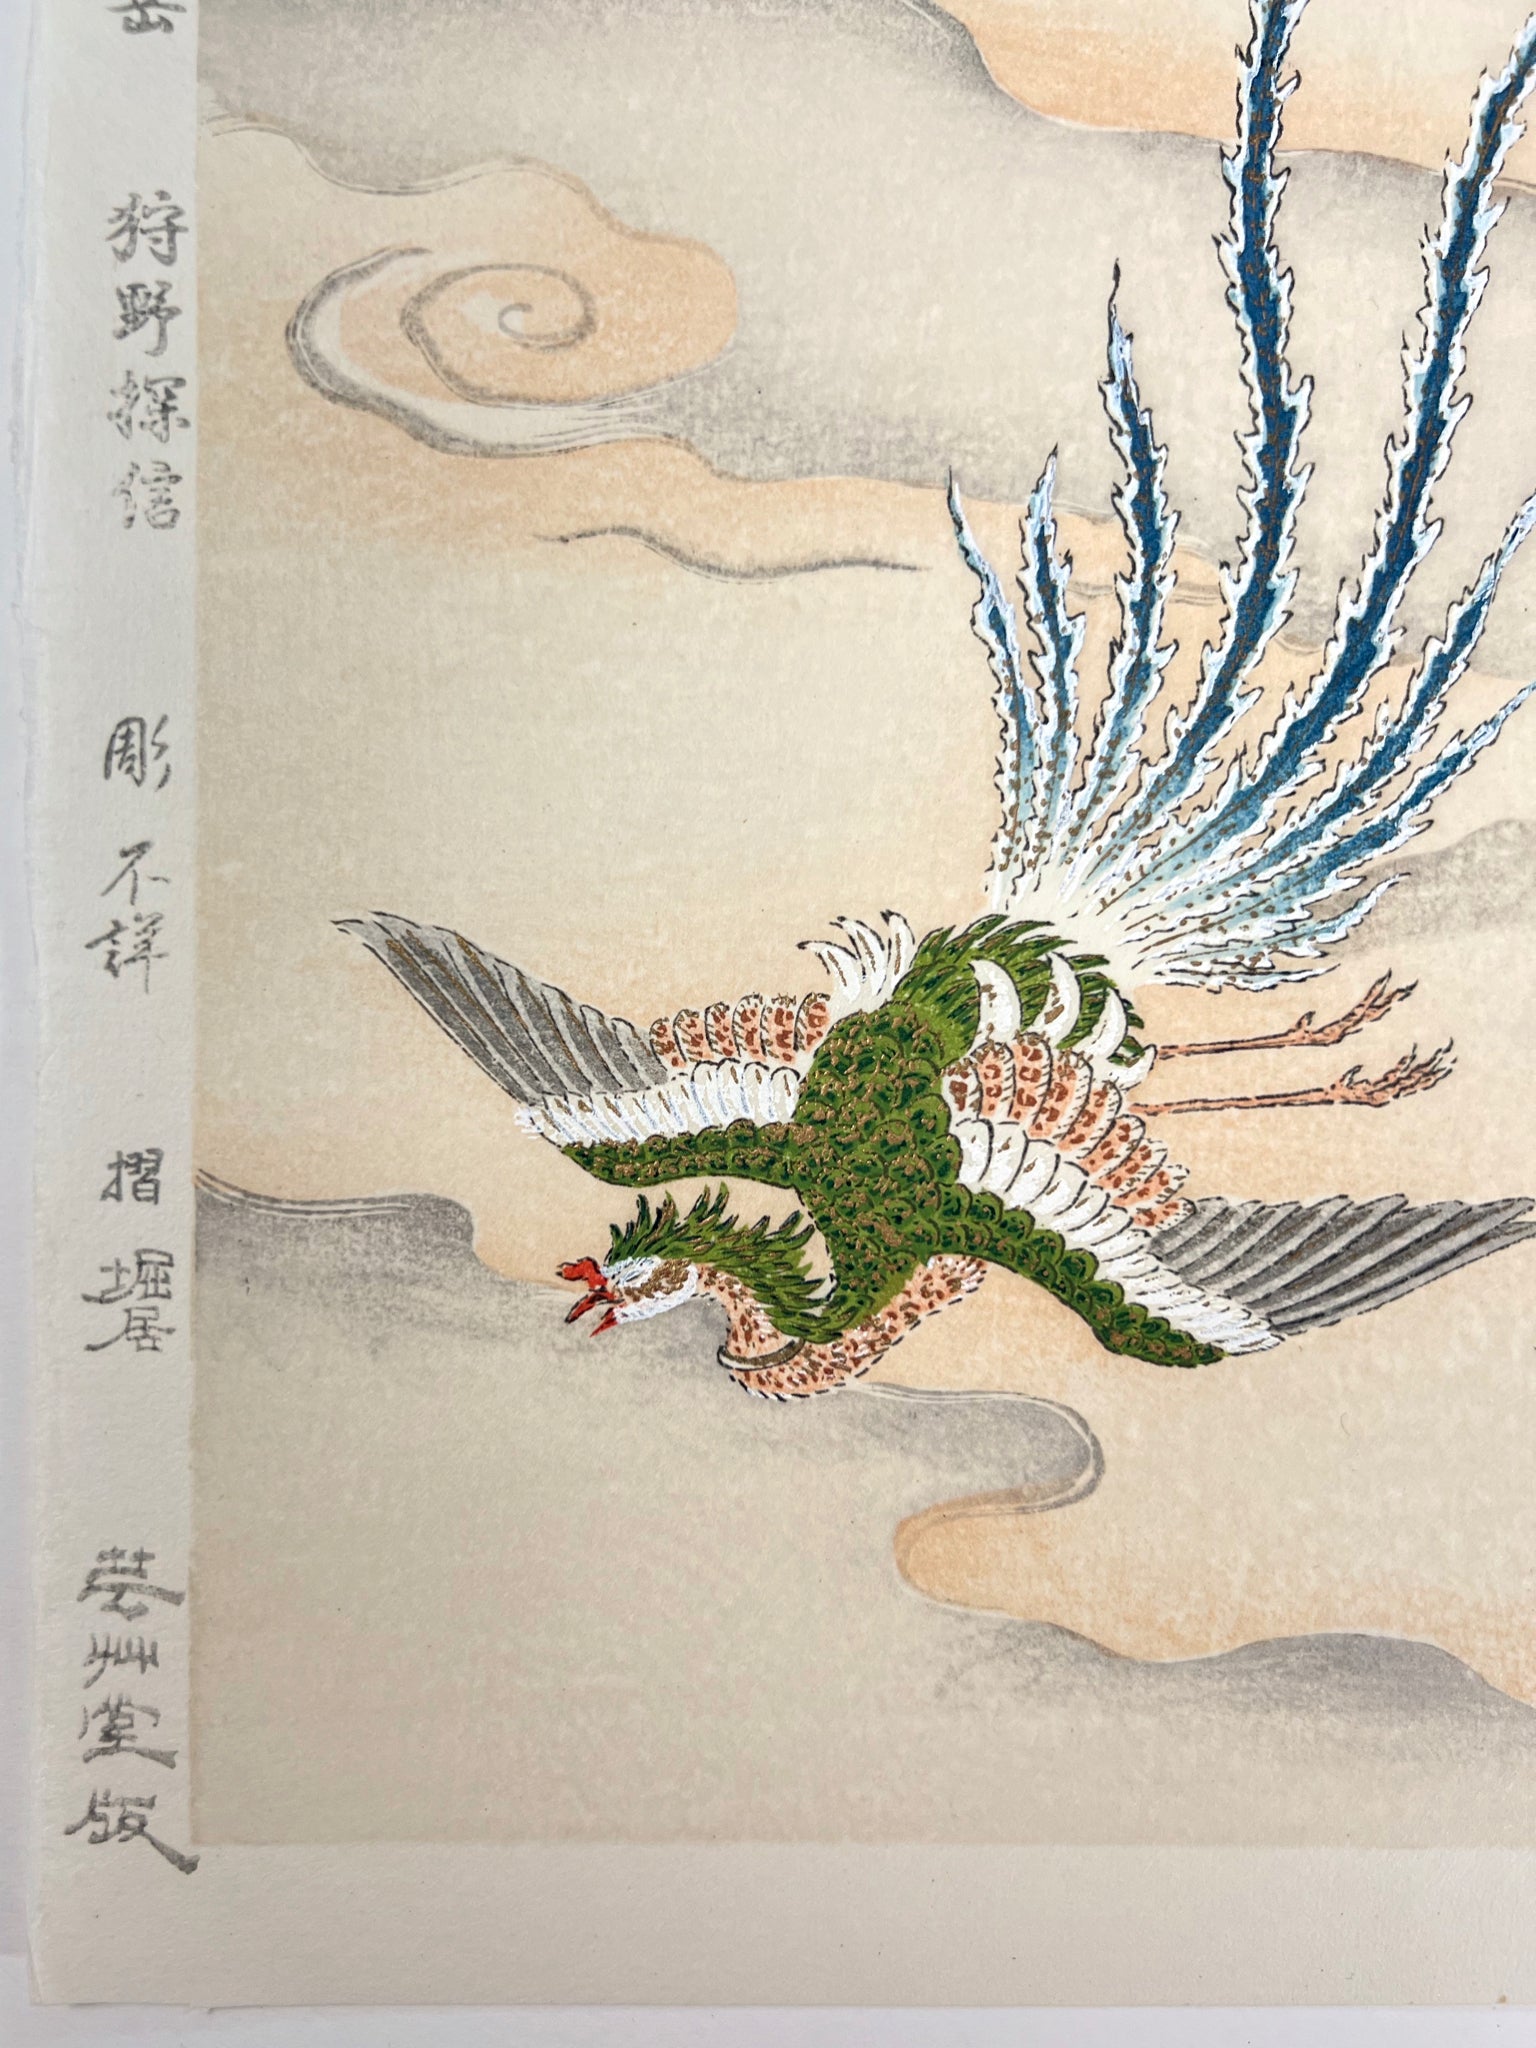 estampe japonaise phoenix en vol au dessus de la mer, gros plan